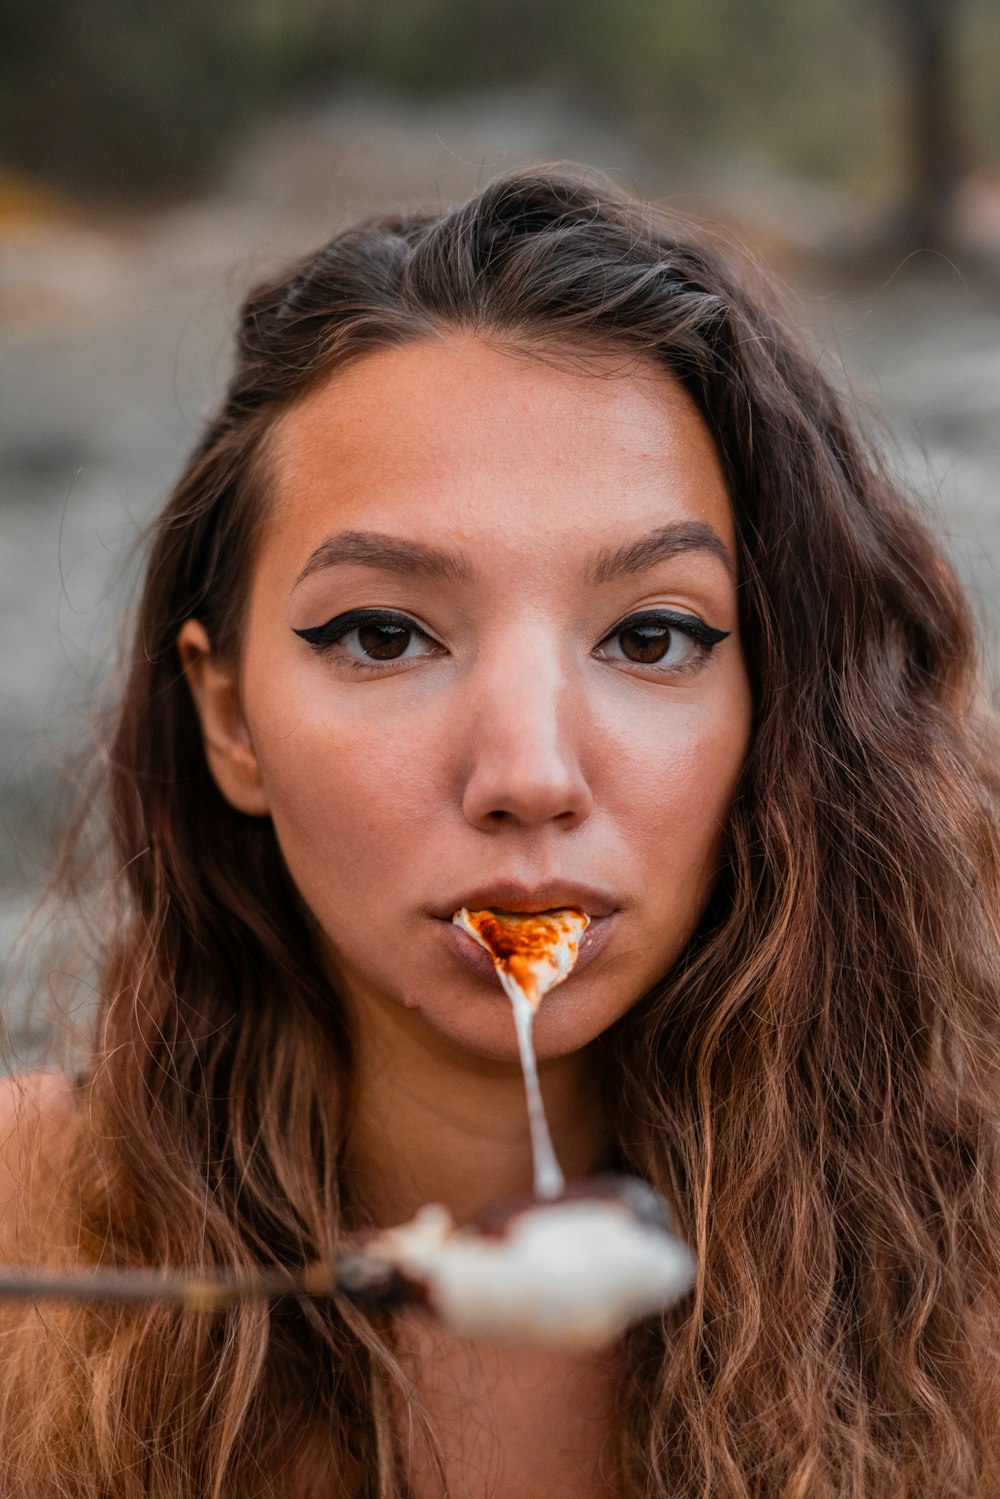 woman with brown hair eating orange food